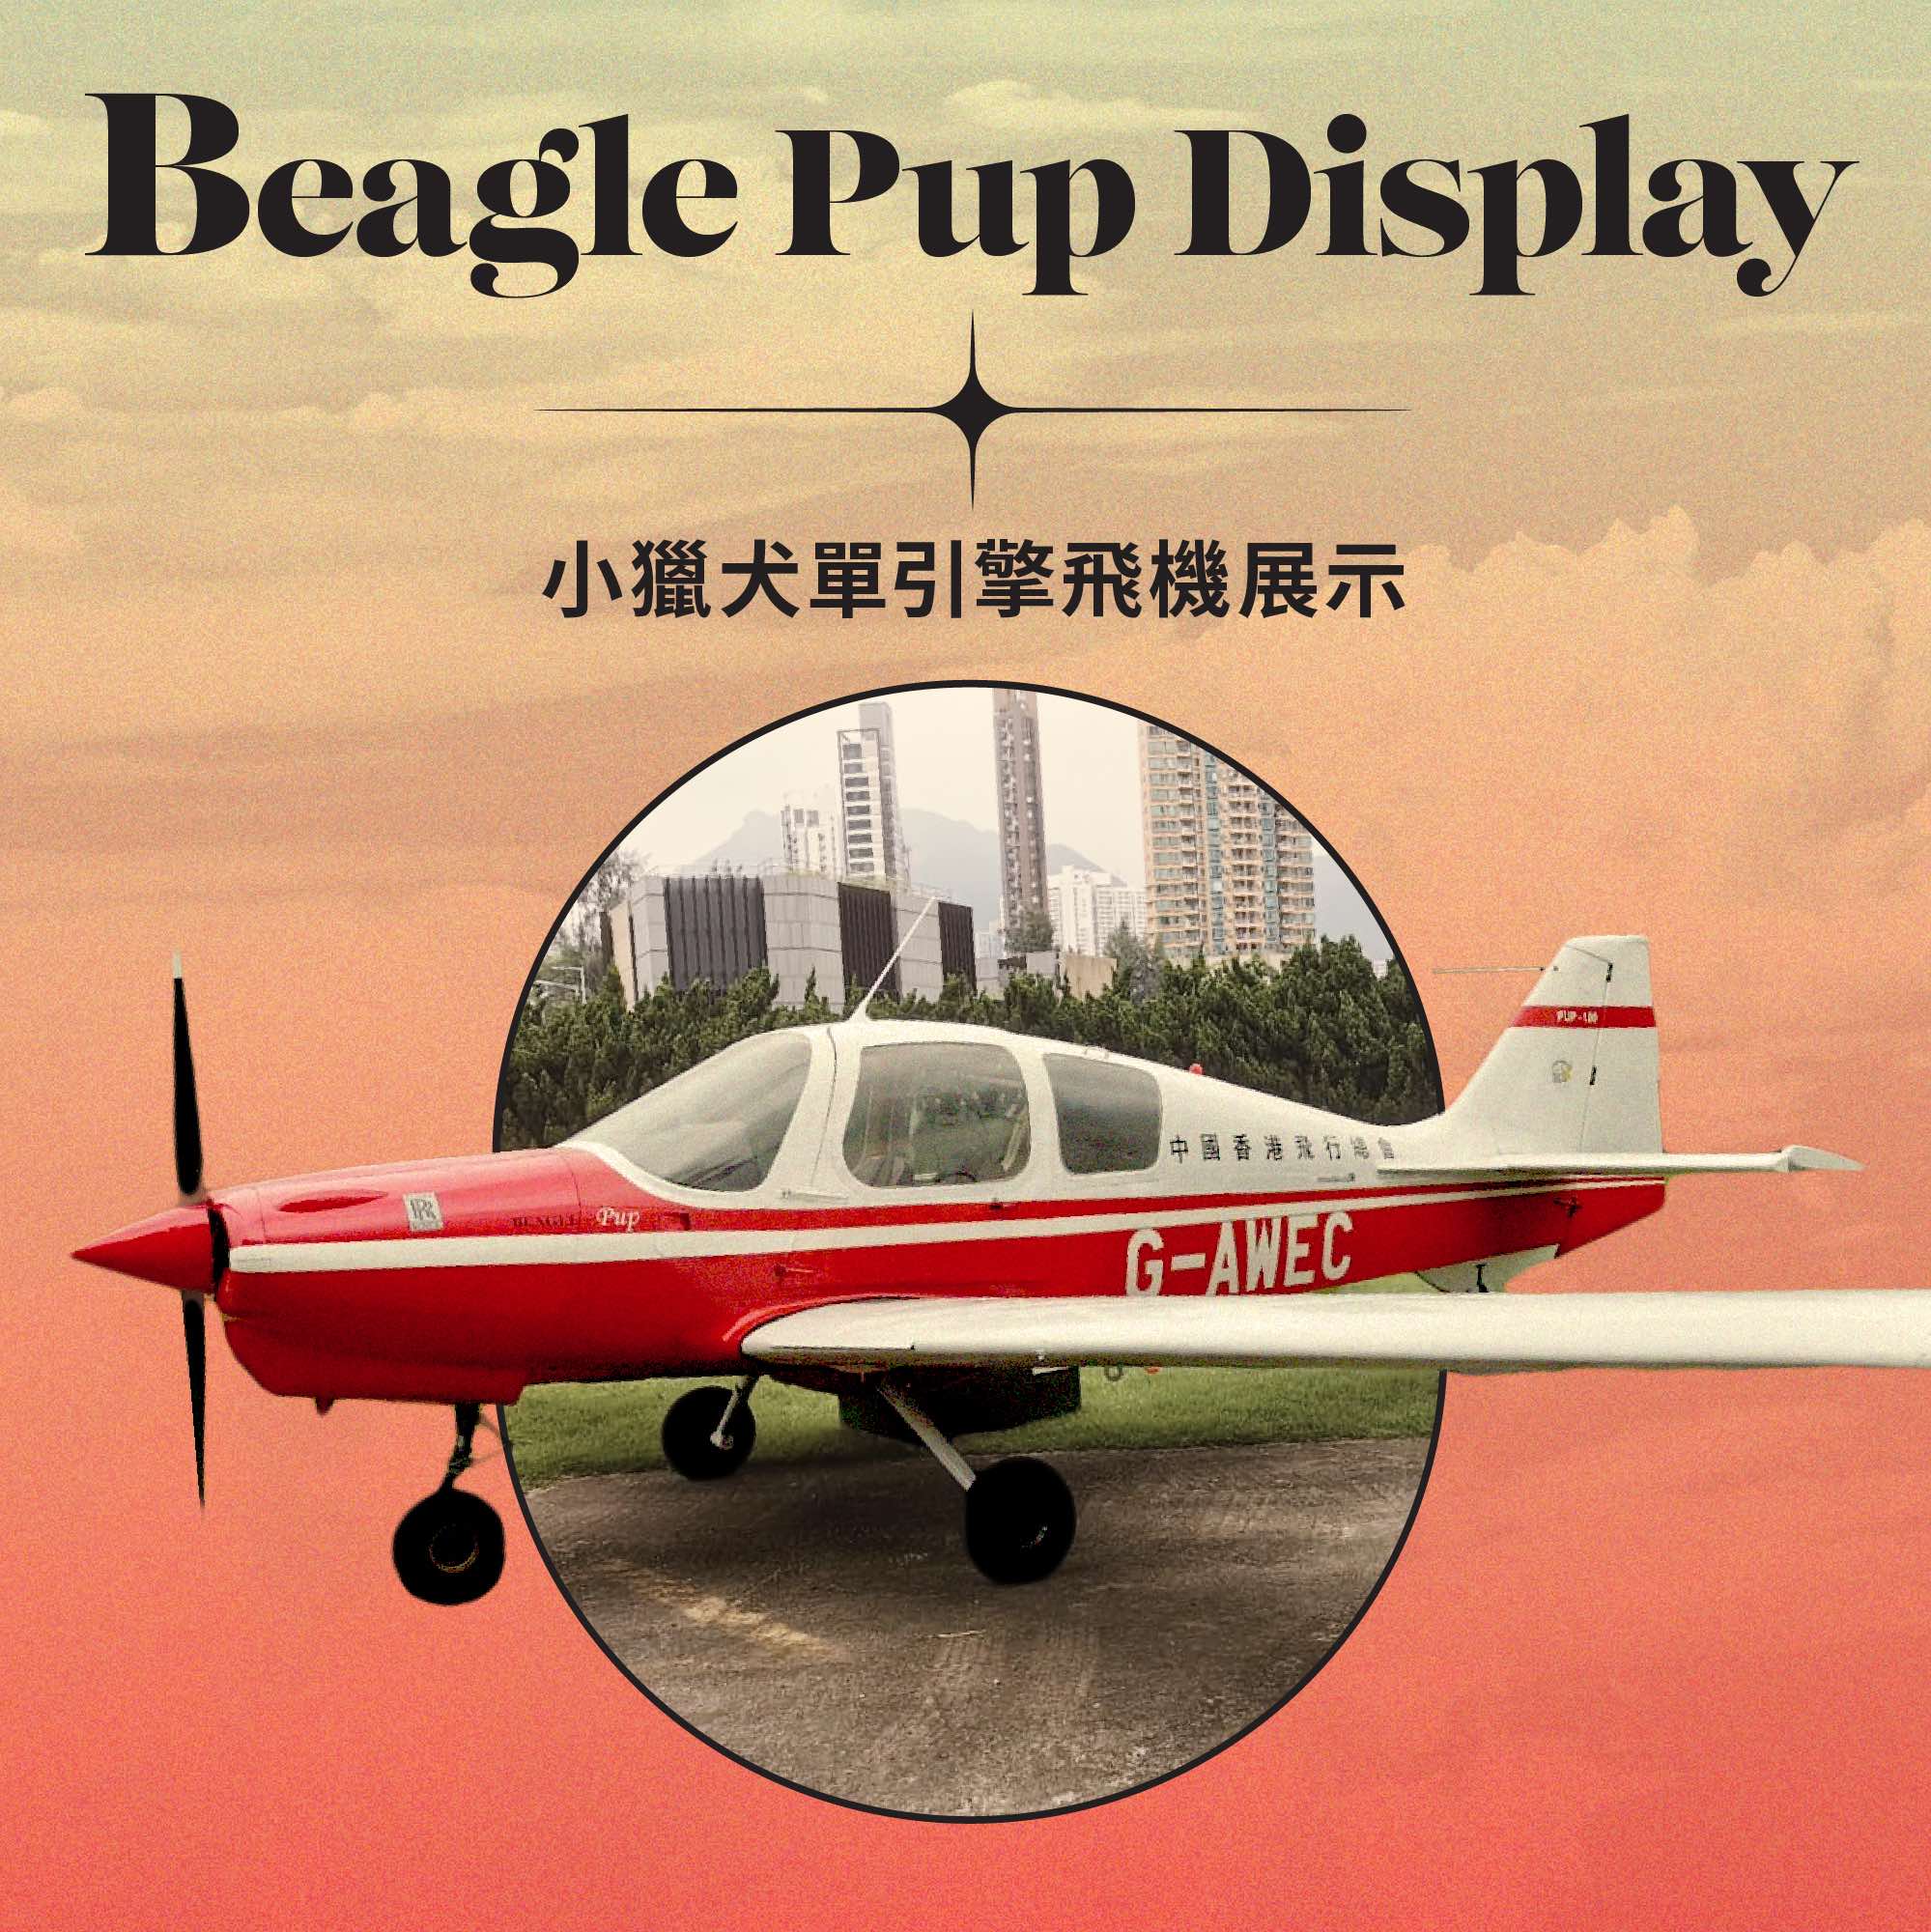 Beagle Pup Display